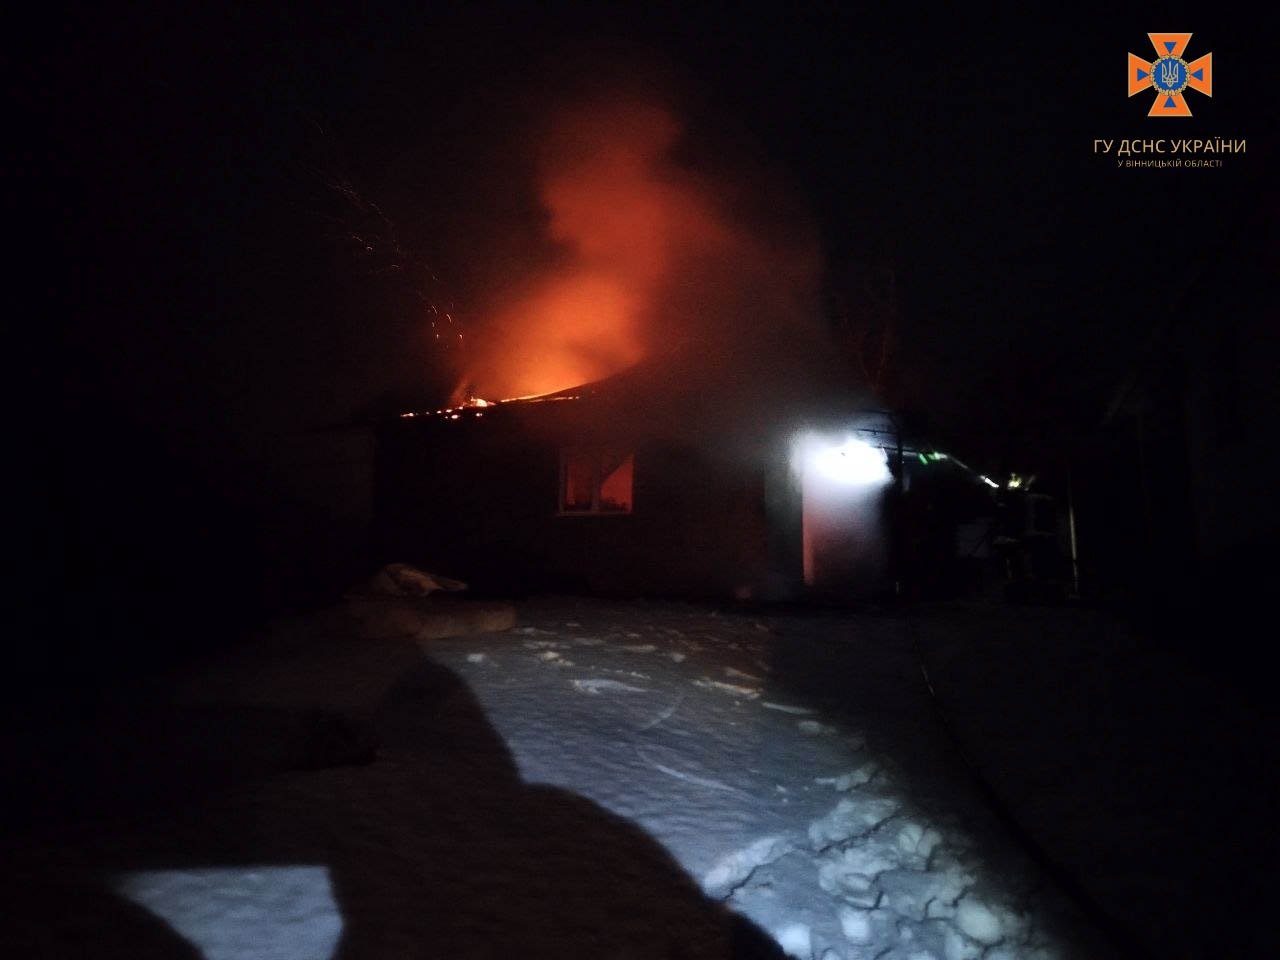 У Вінниці та Хмільницькому районі сталися пожежі - горіли приватні будинки